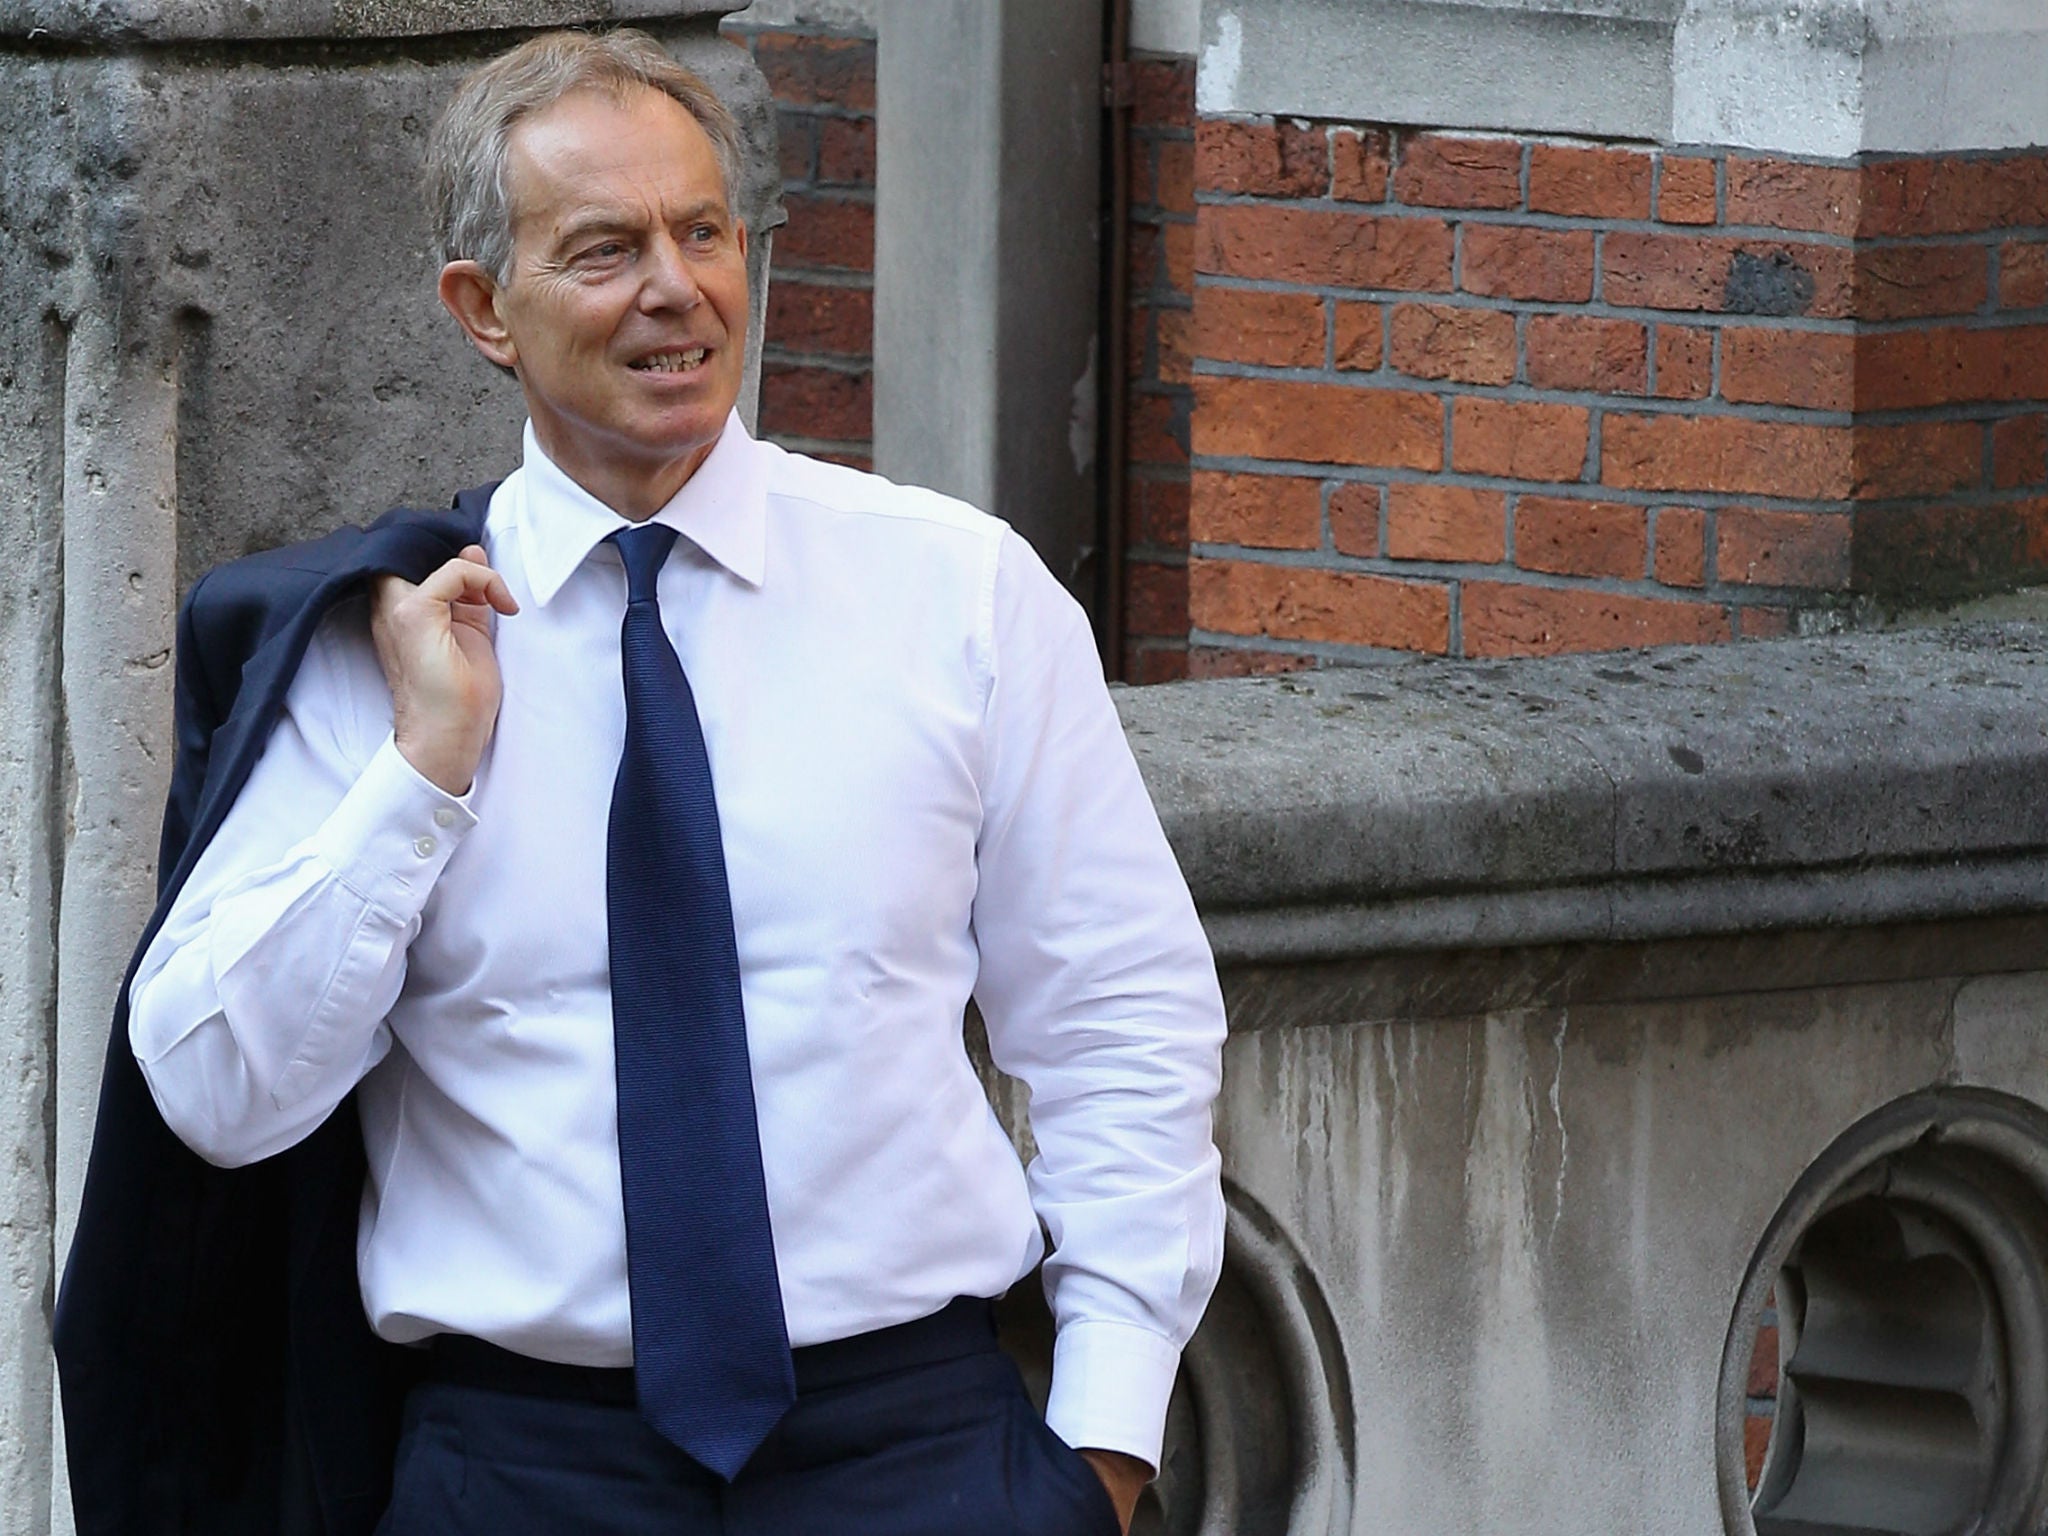 Tony Blair had a few interesting careers before entering politics